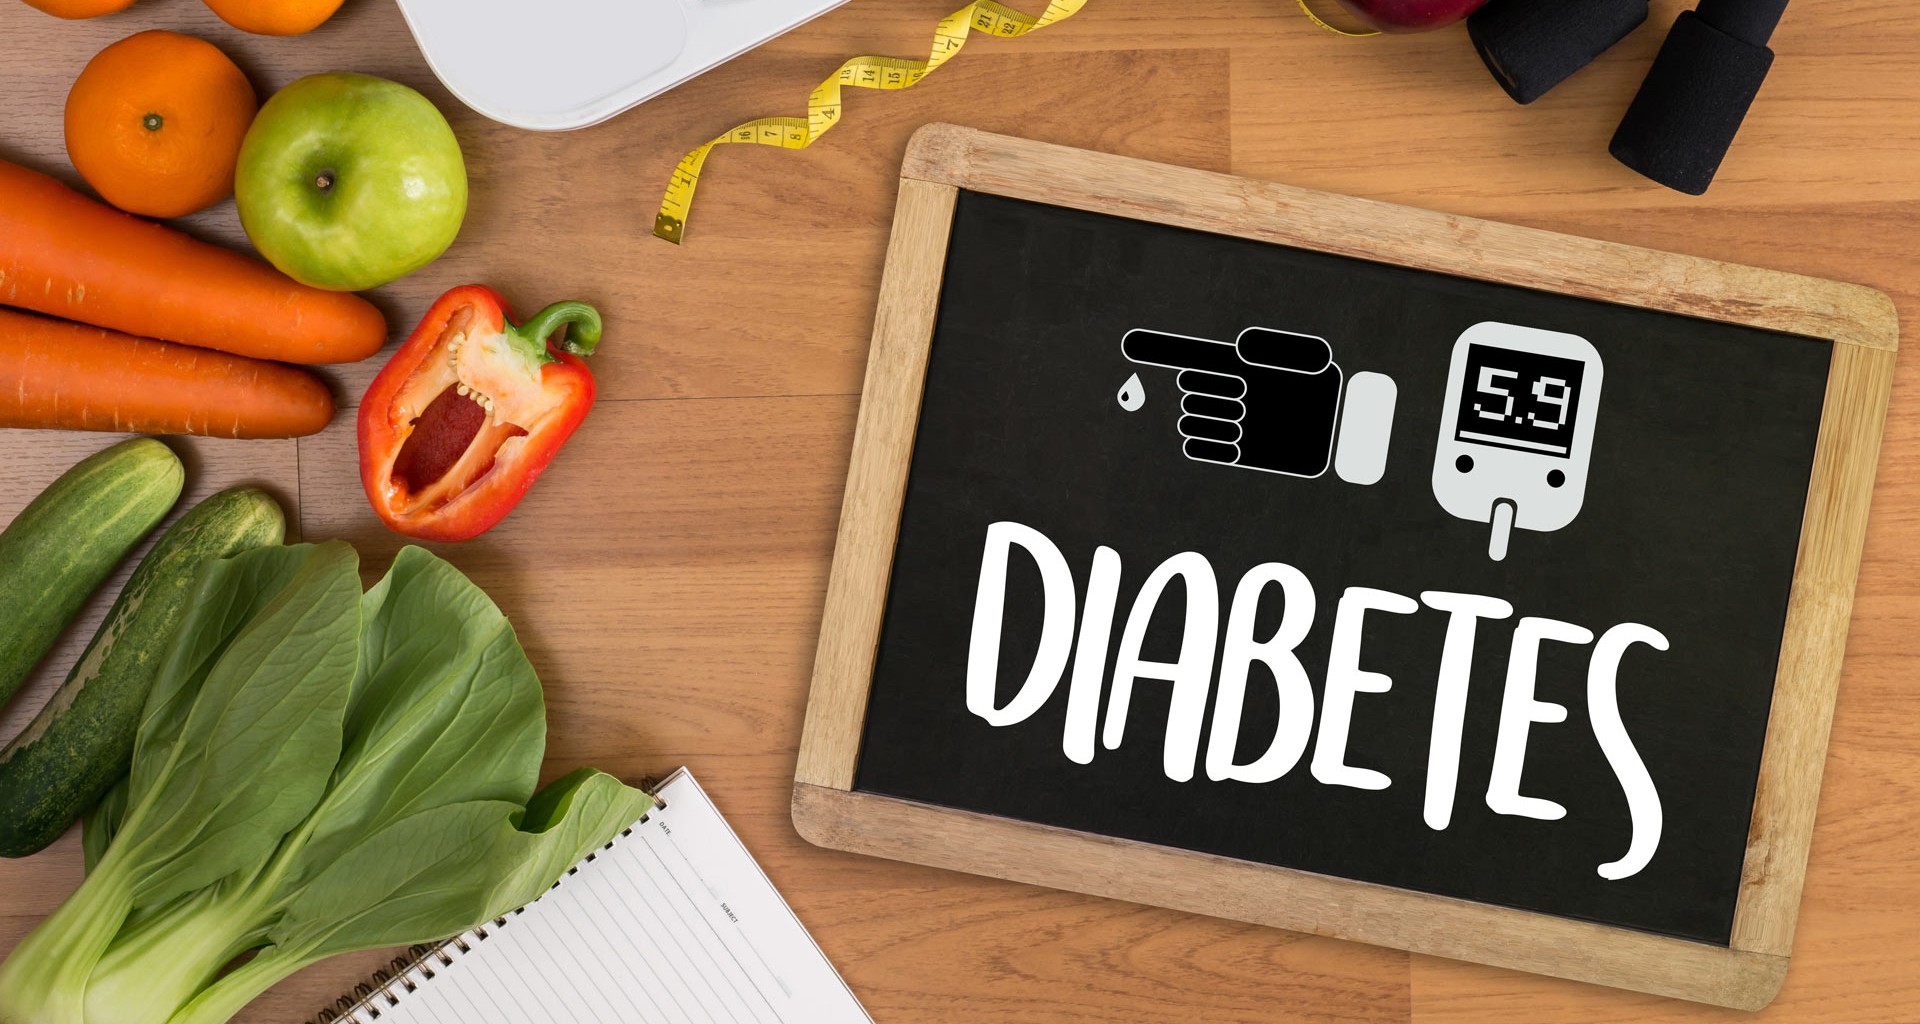 Día mundial de la diabetes: cómo aprender a vivir con ella